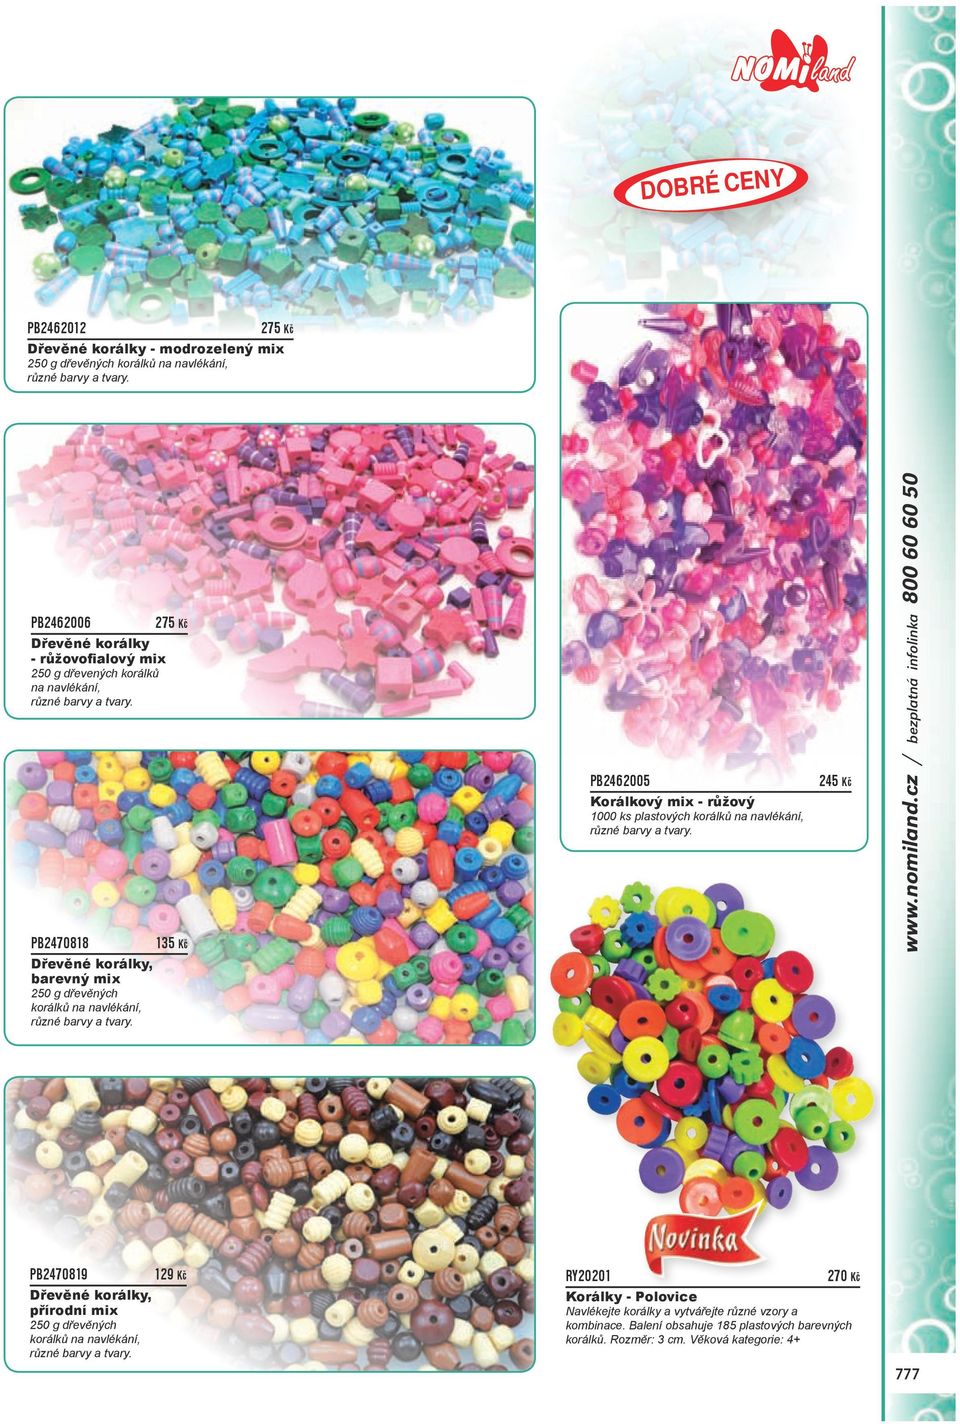 PB2470818 135 Kč PB2462005 Korálkový mix - růžový 1000 ks plastových korálků na navlékání, různé barvy a tvary. 245 Kč www.nomiland.